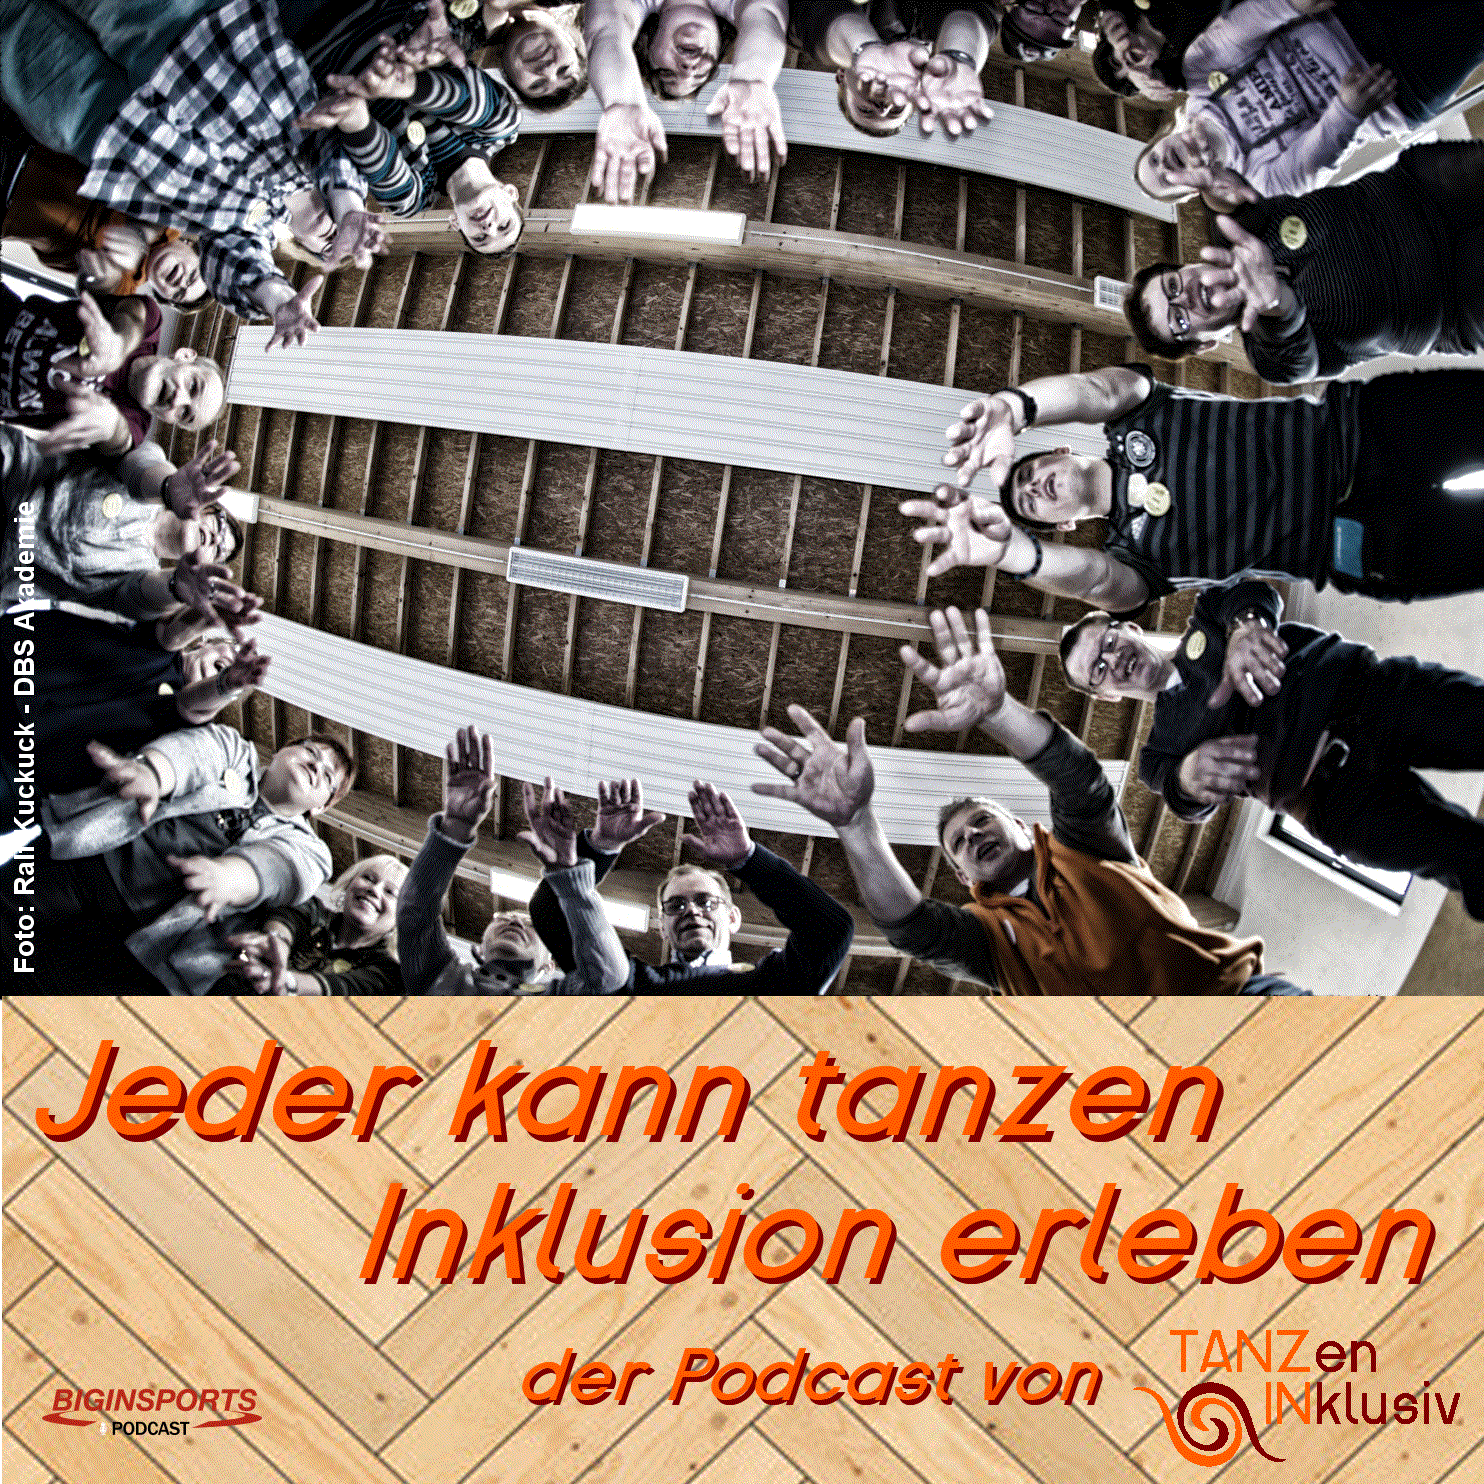 Read more about the article Jeder kann tanzen Podcast – Rollstuhltanzpaar im Gespräch!